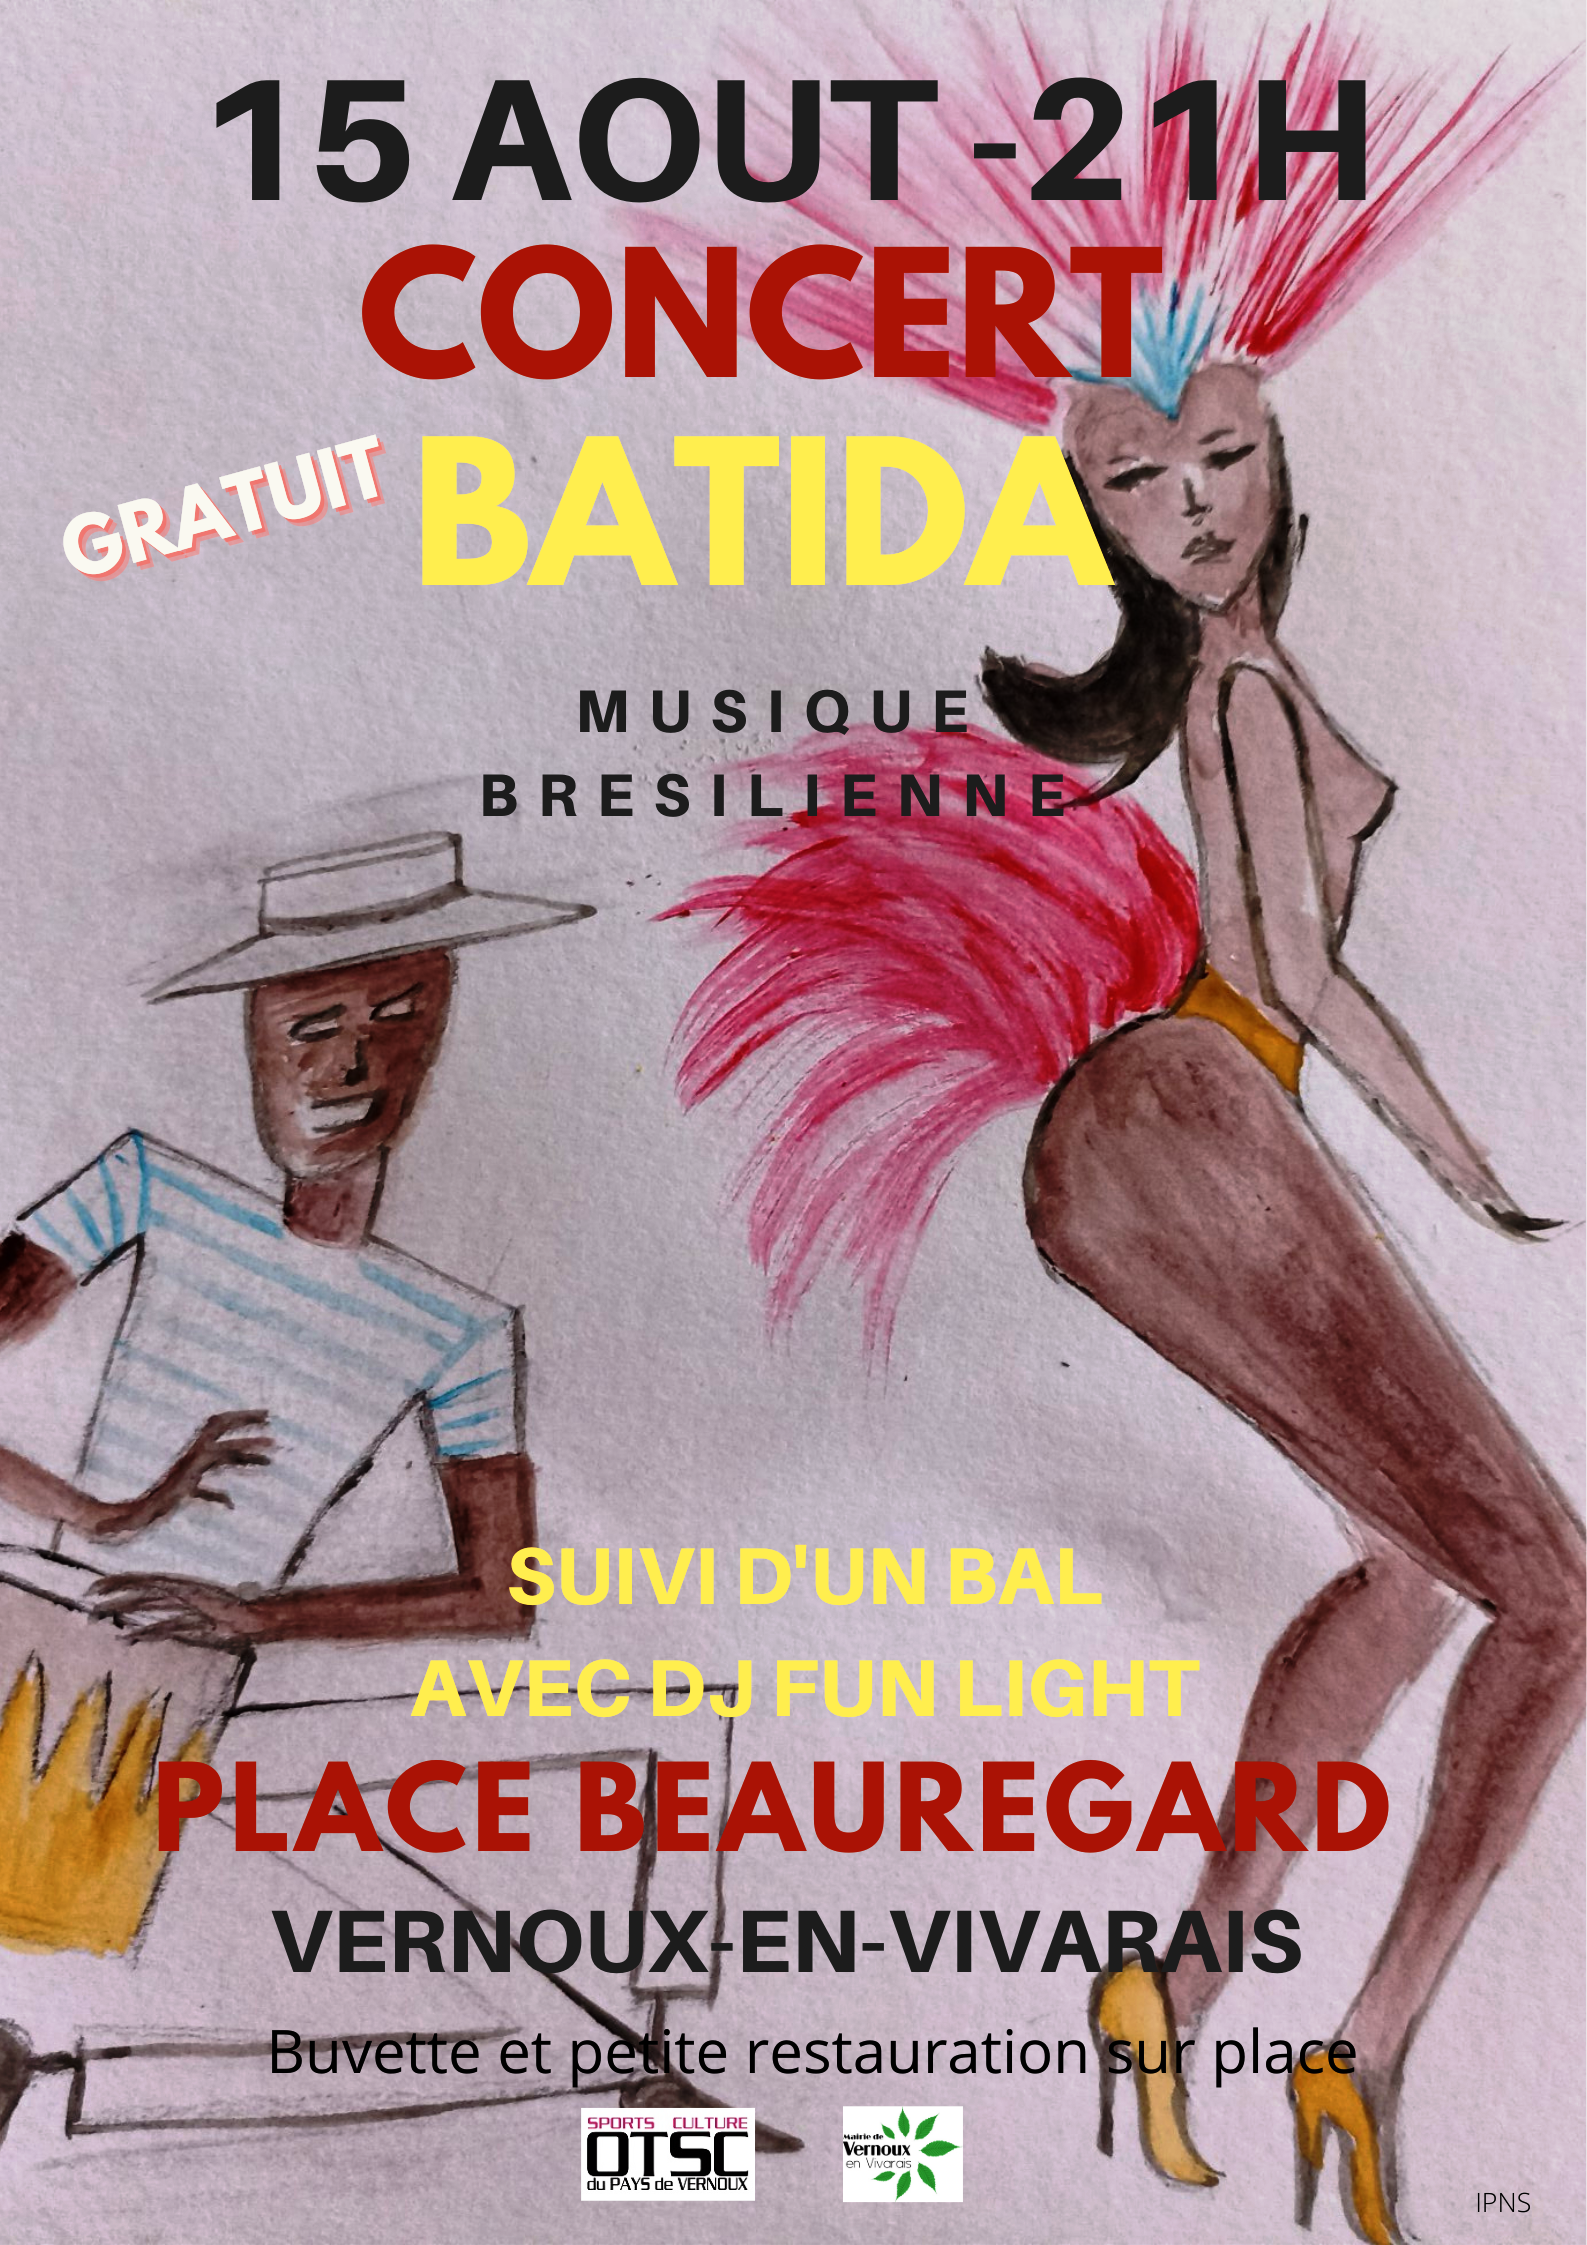 Events…Put it in your diary : Soirée concert/bal : concert du groupe Batida (musique brésilienne) + bal avec sono DJ Fun Light